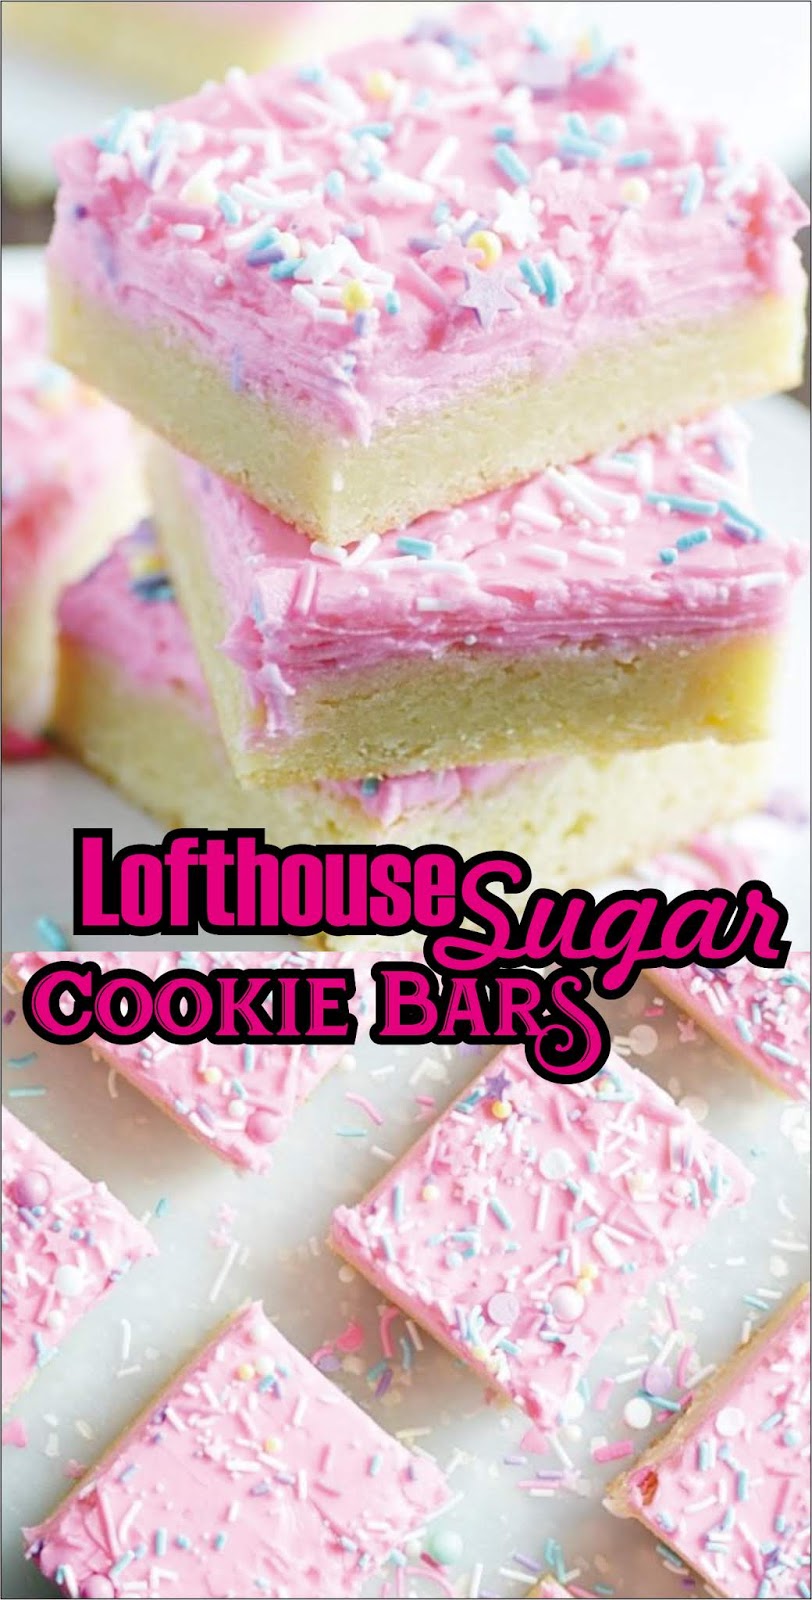 Lofthouse Sugar Cookie Bars #Christmas #Cookies - angrygeorgian